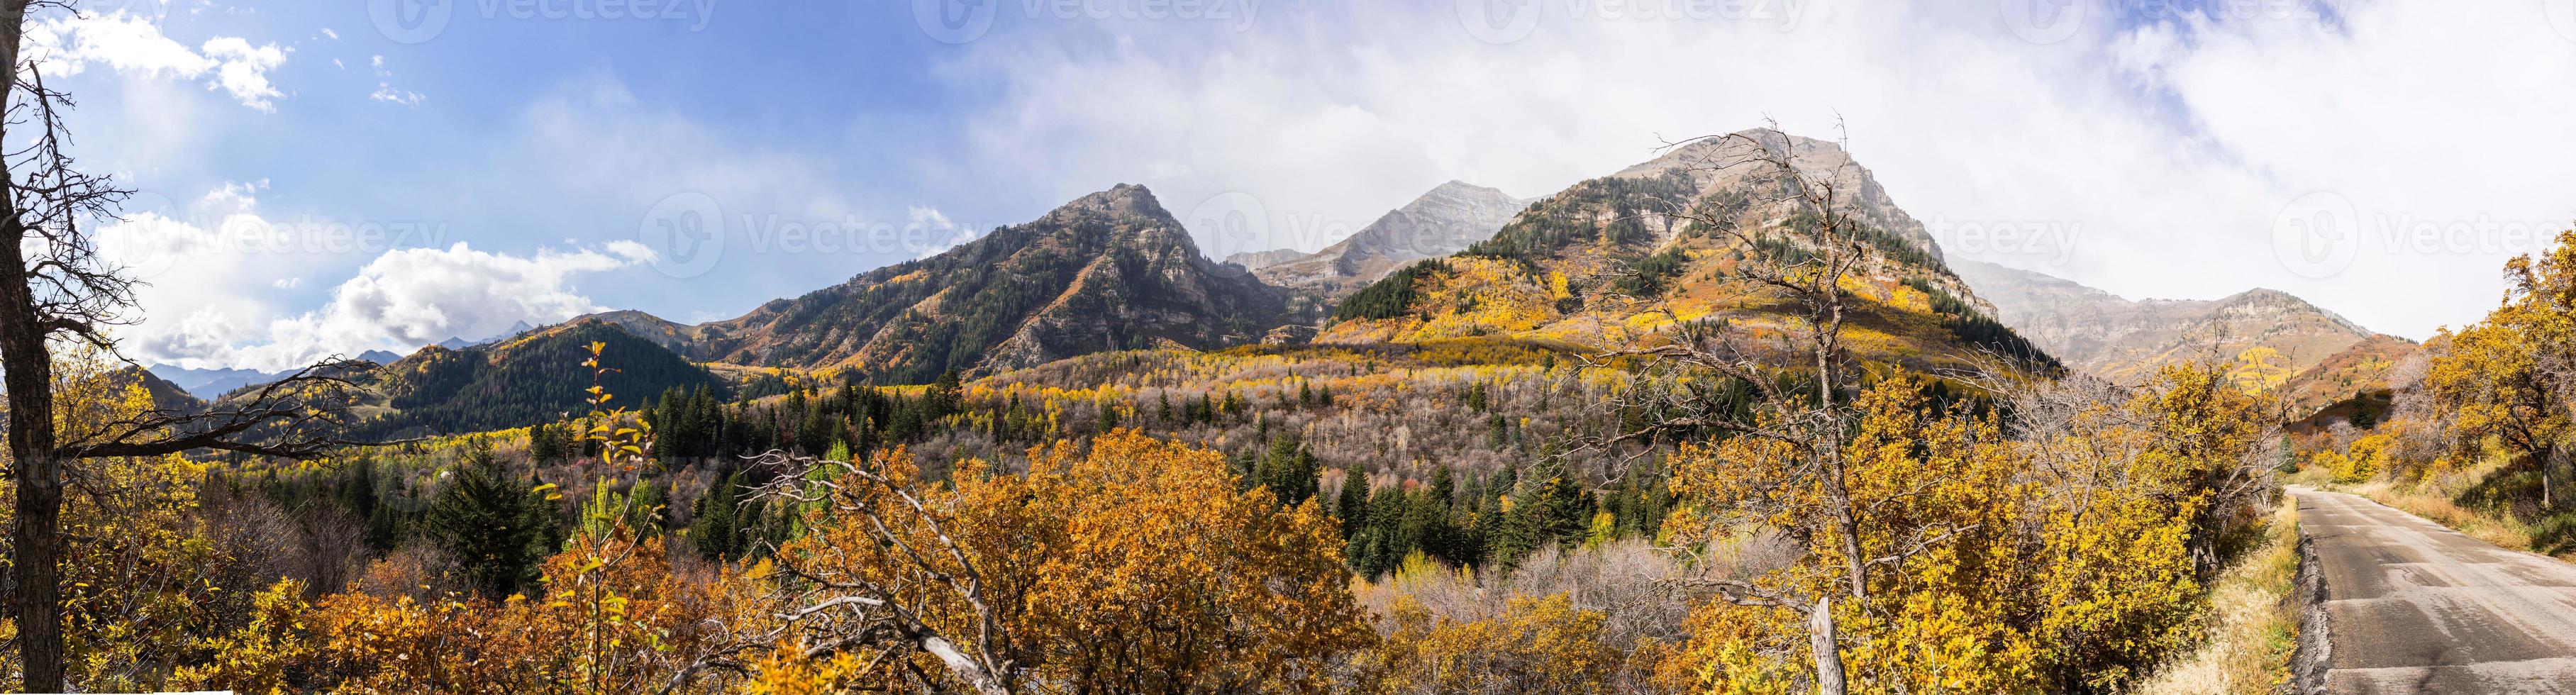 outono nas montanhas wasatch ao longo do circuito alpino (utah) foto